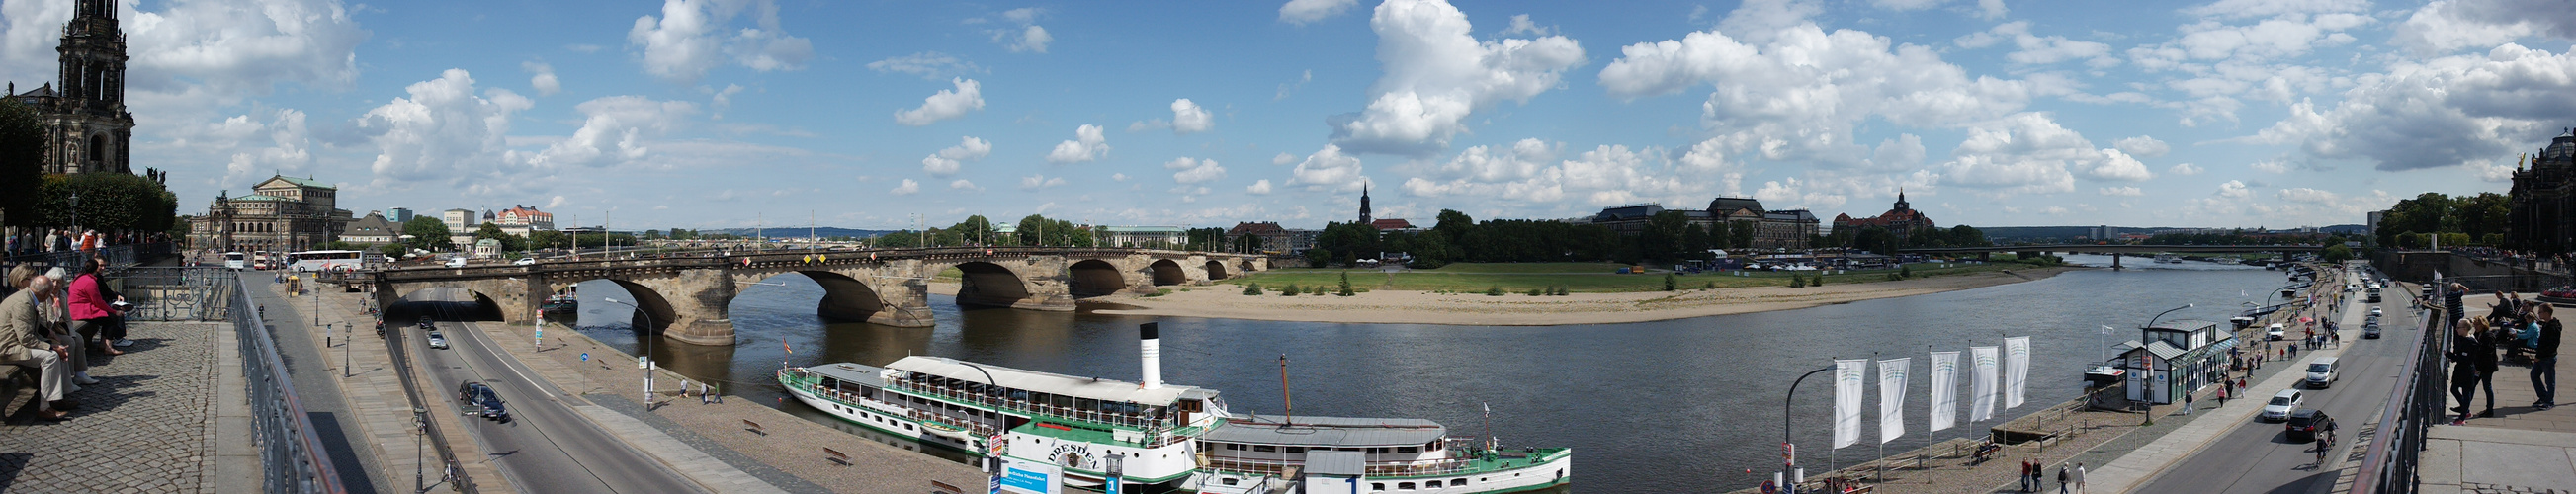 Dresden Elbe 2014